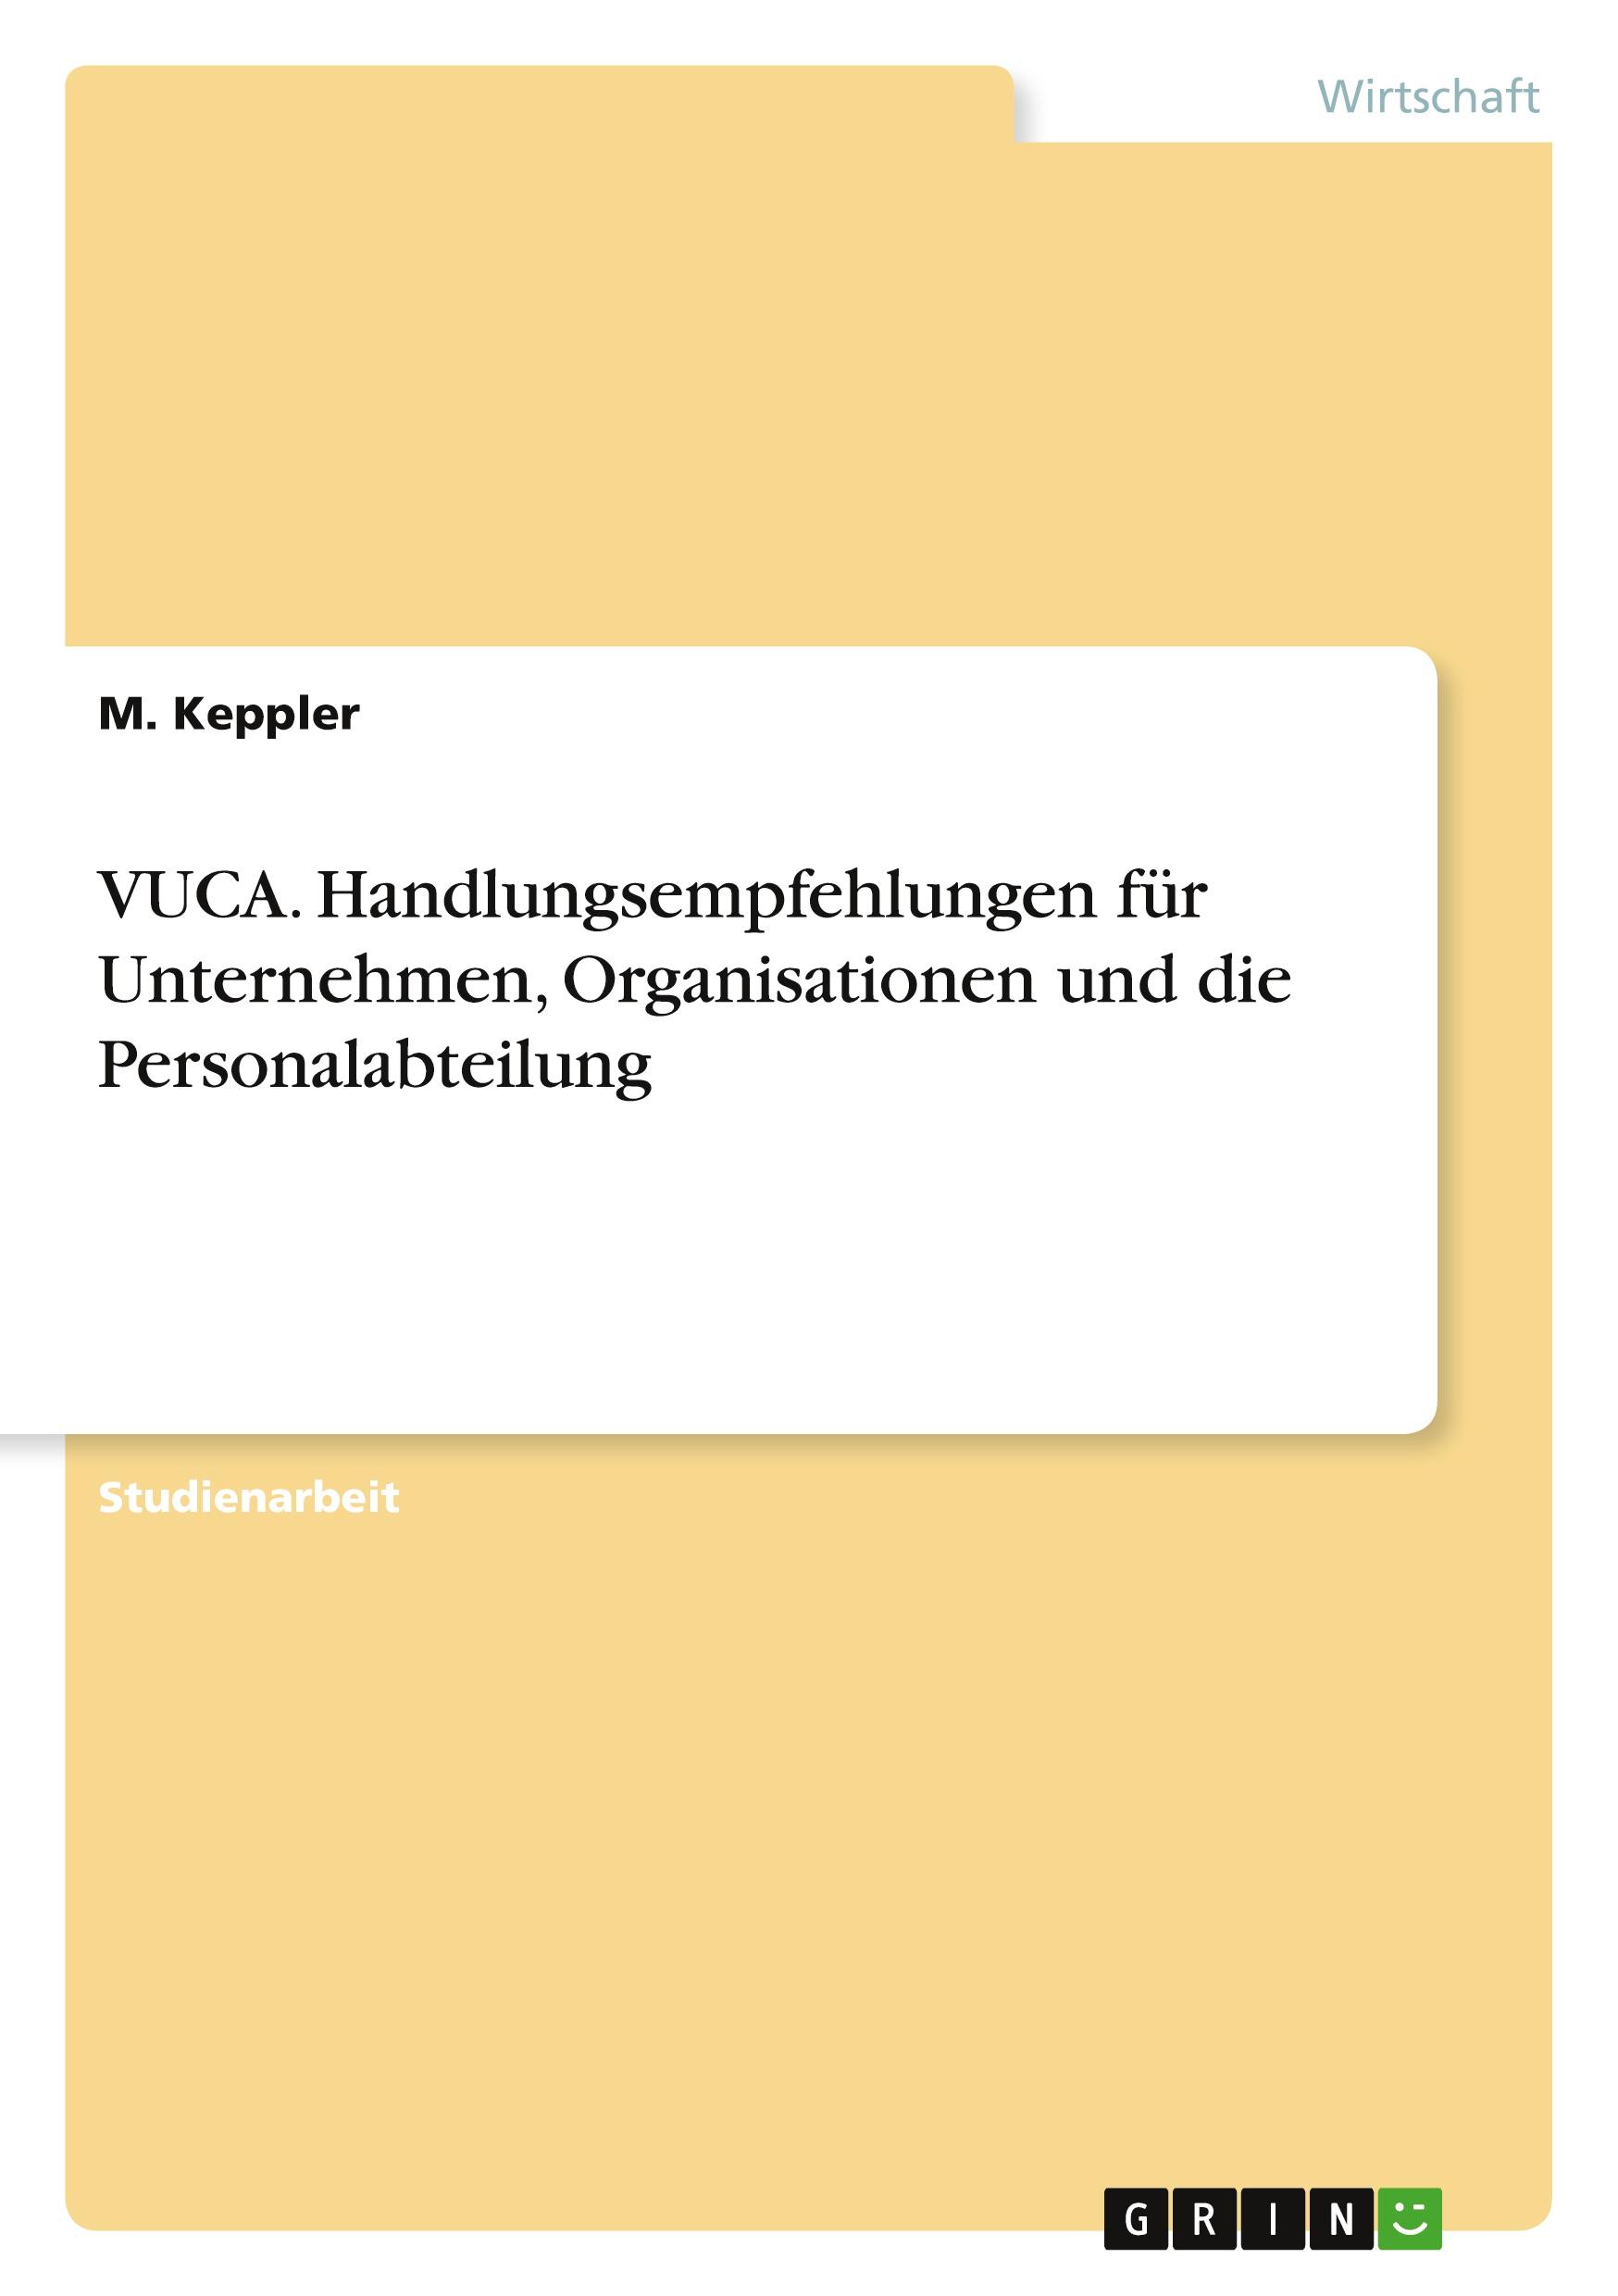 VUCA. Handlungsempfehlungen für Unternehmen, Organisationen und die Personalabteilung / M. Keppler / Taschenbuch / Paperback / 32 S. / Deutsch / 2018 / GRIN Verlag / EAN 9783668801028 - Keppler, M.